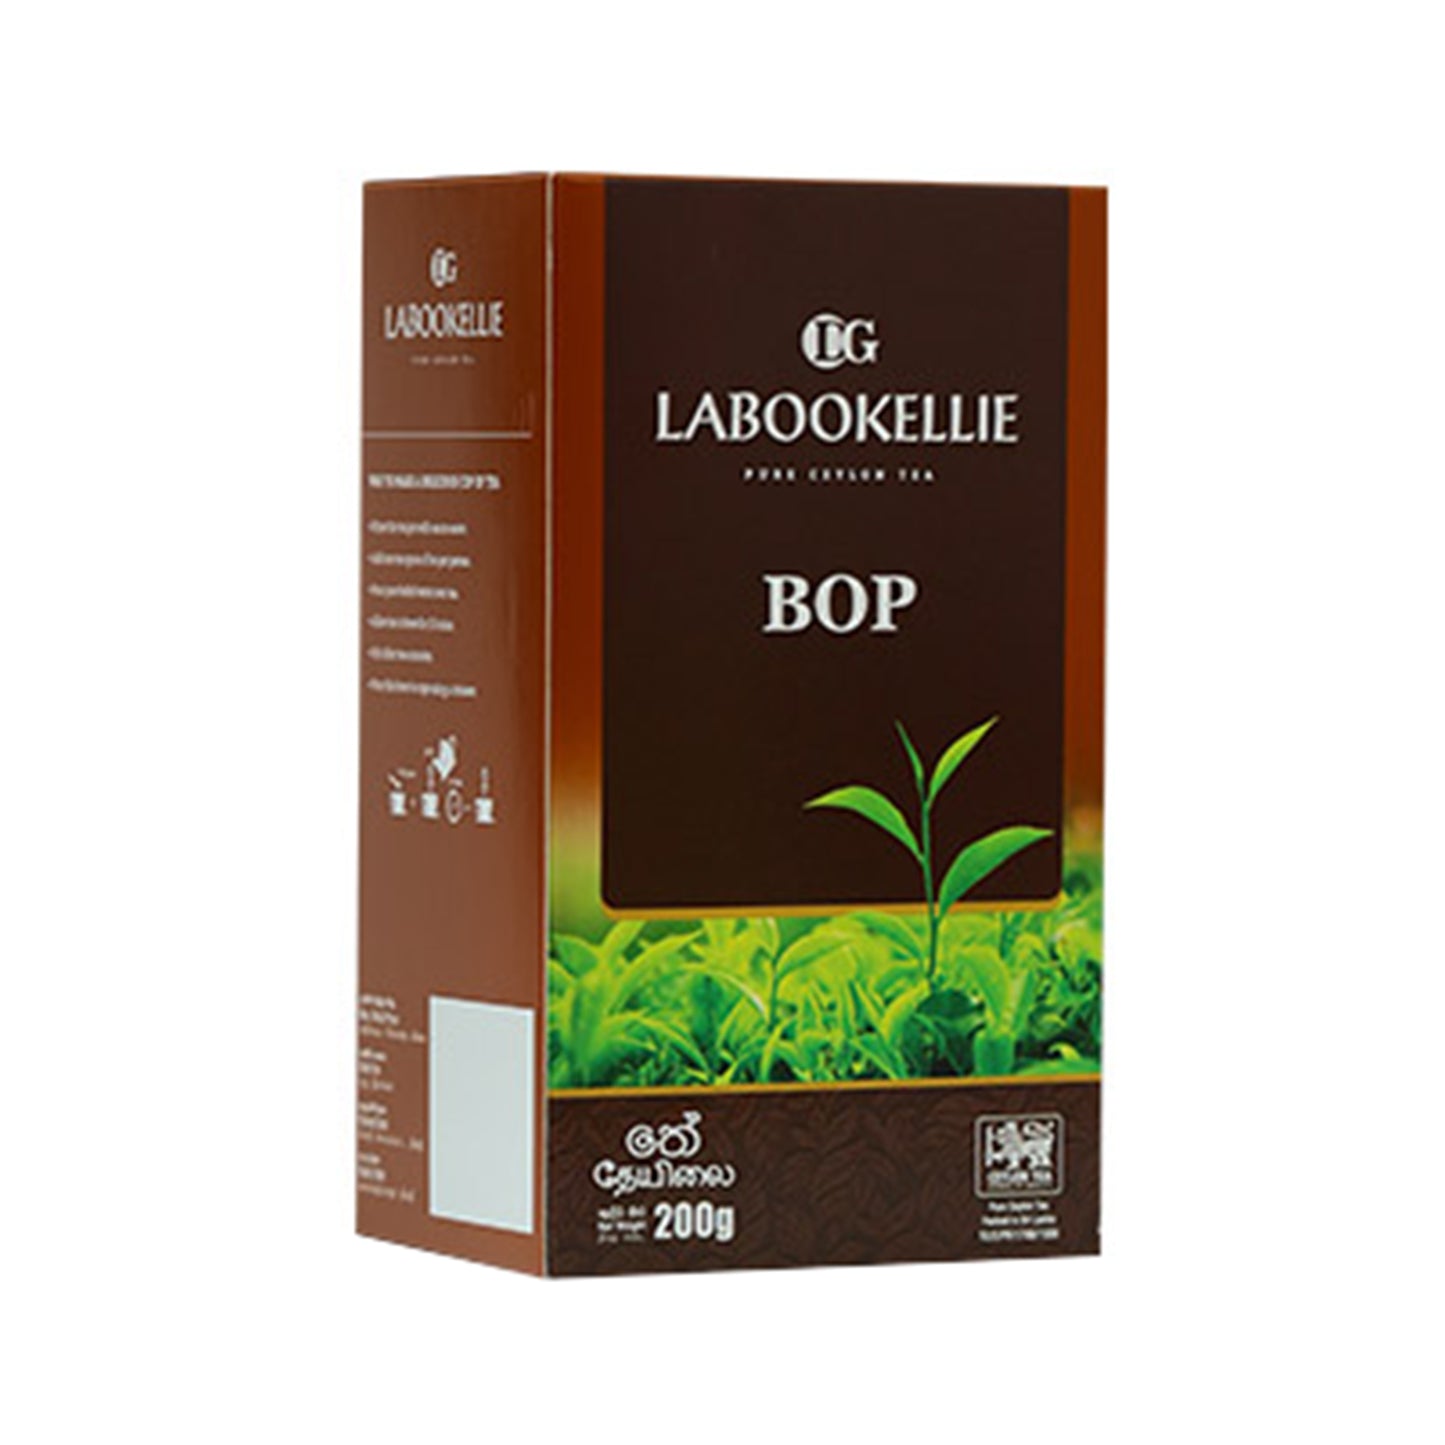 Herbata BOP DG Labookellie (200g)